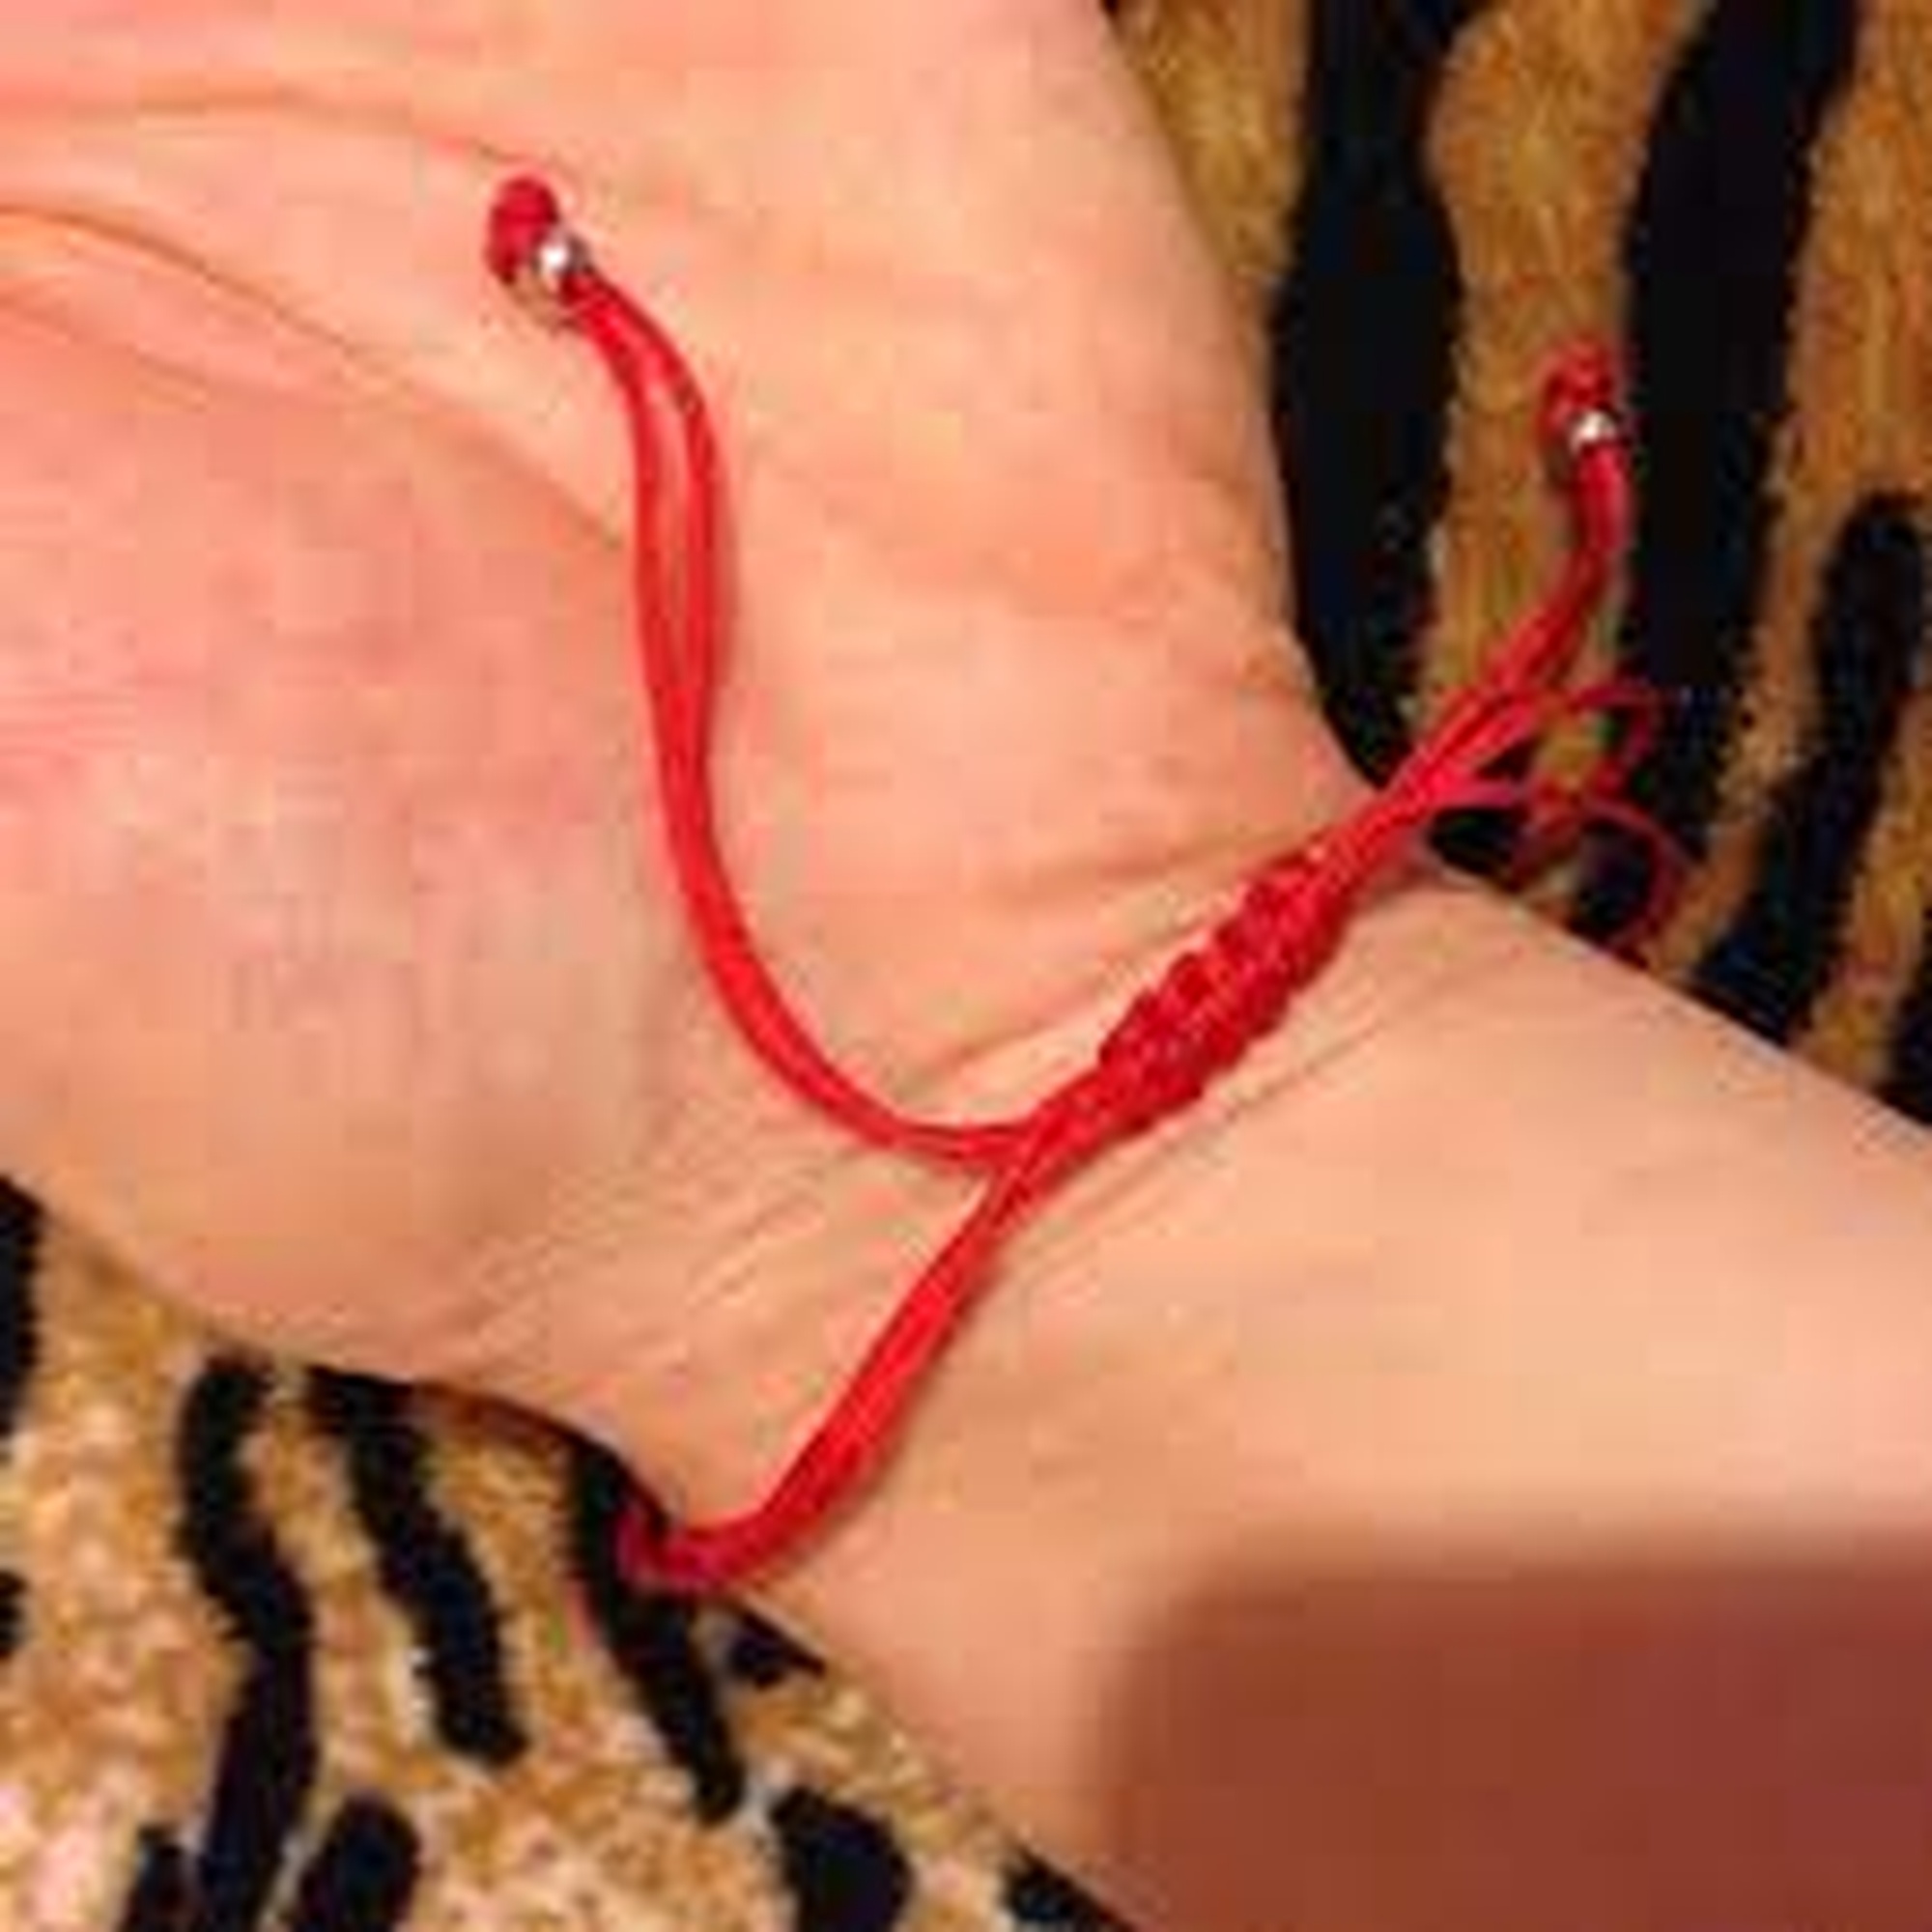 Завязанные нитки на руке. Красная шерстяная нить. Красная нить на руке.